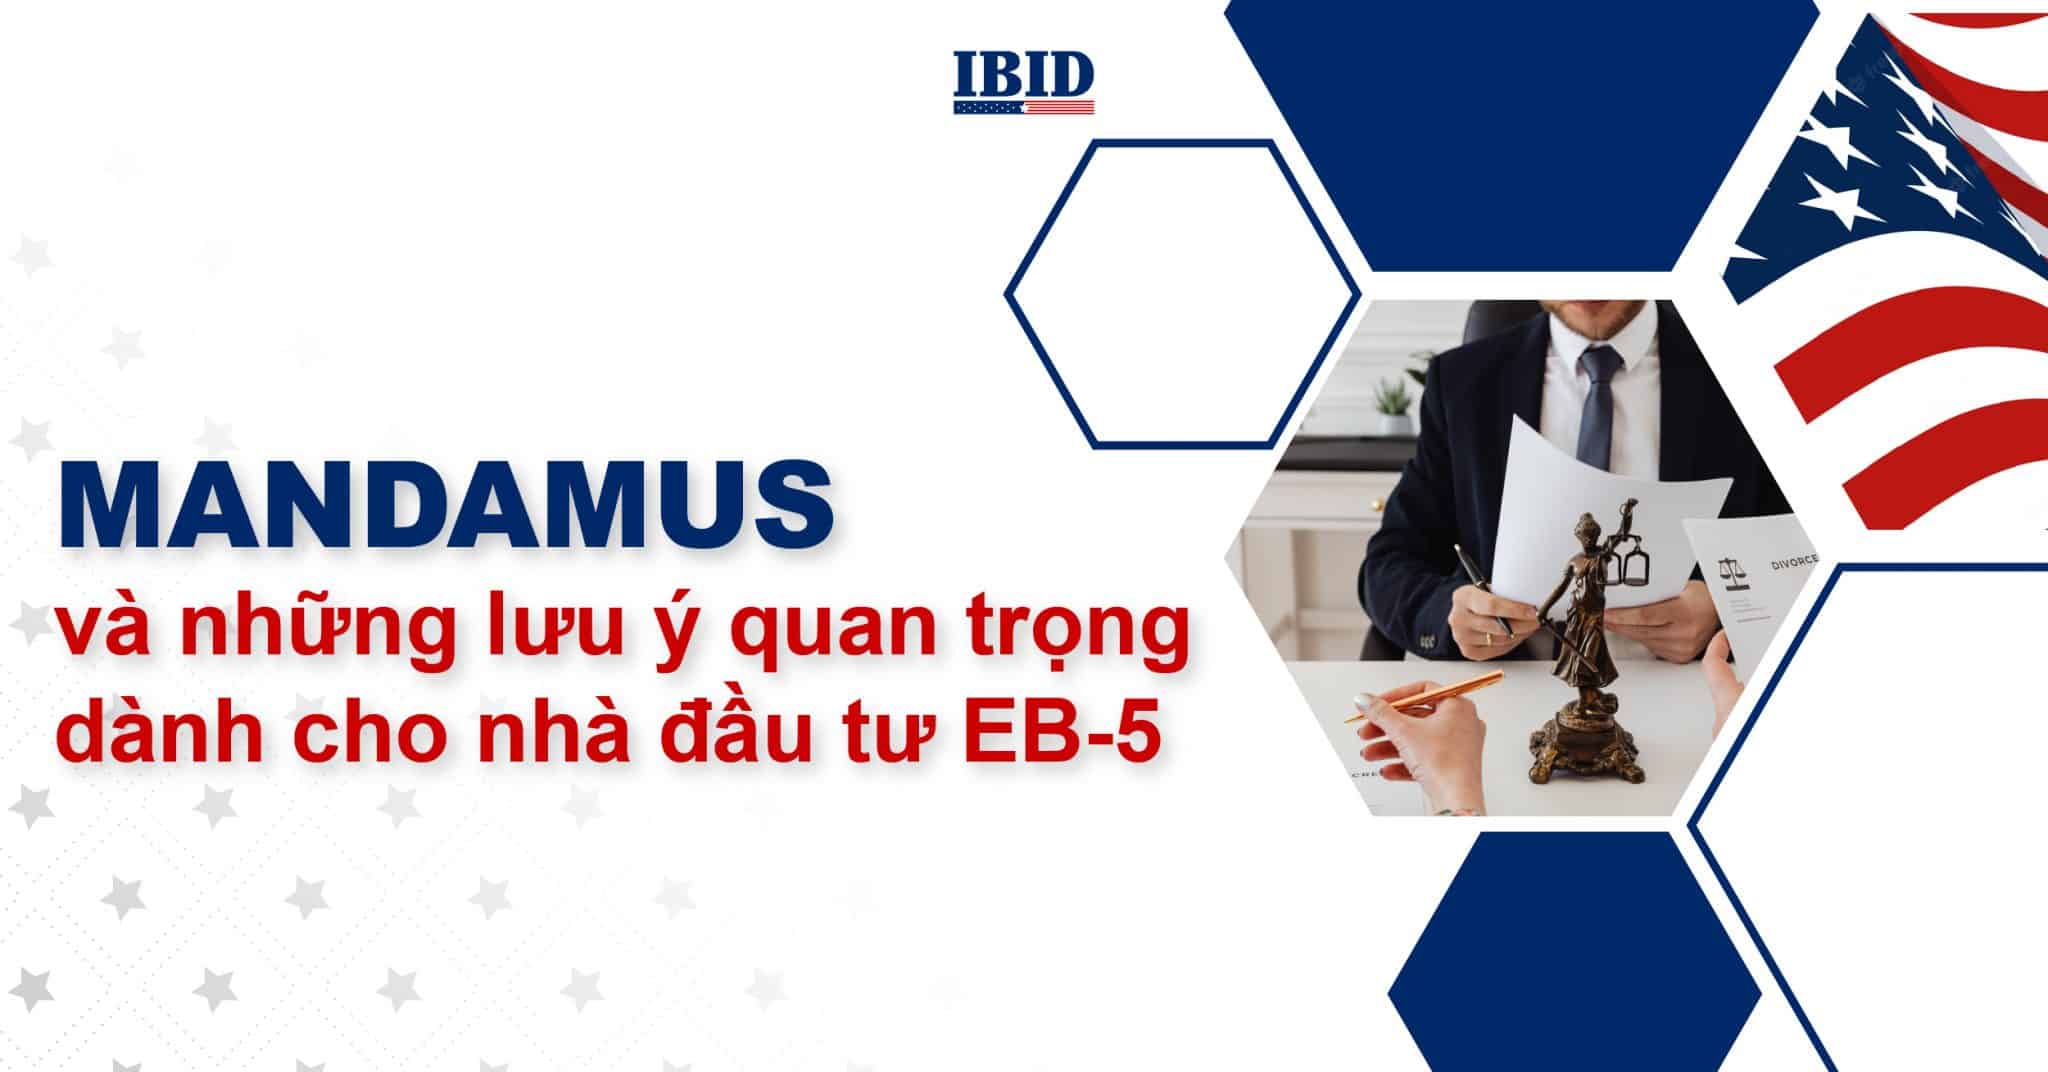 Mandamus và những lưu ý quan trọng dành cho nhà đầu tư EB-5